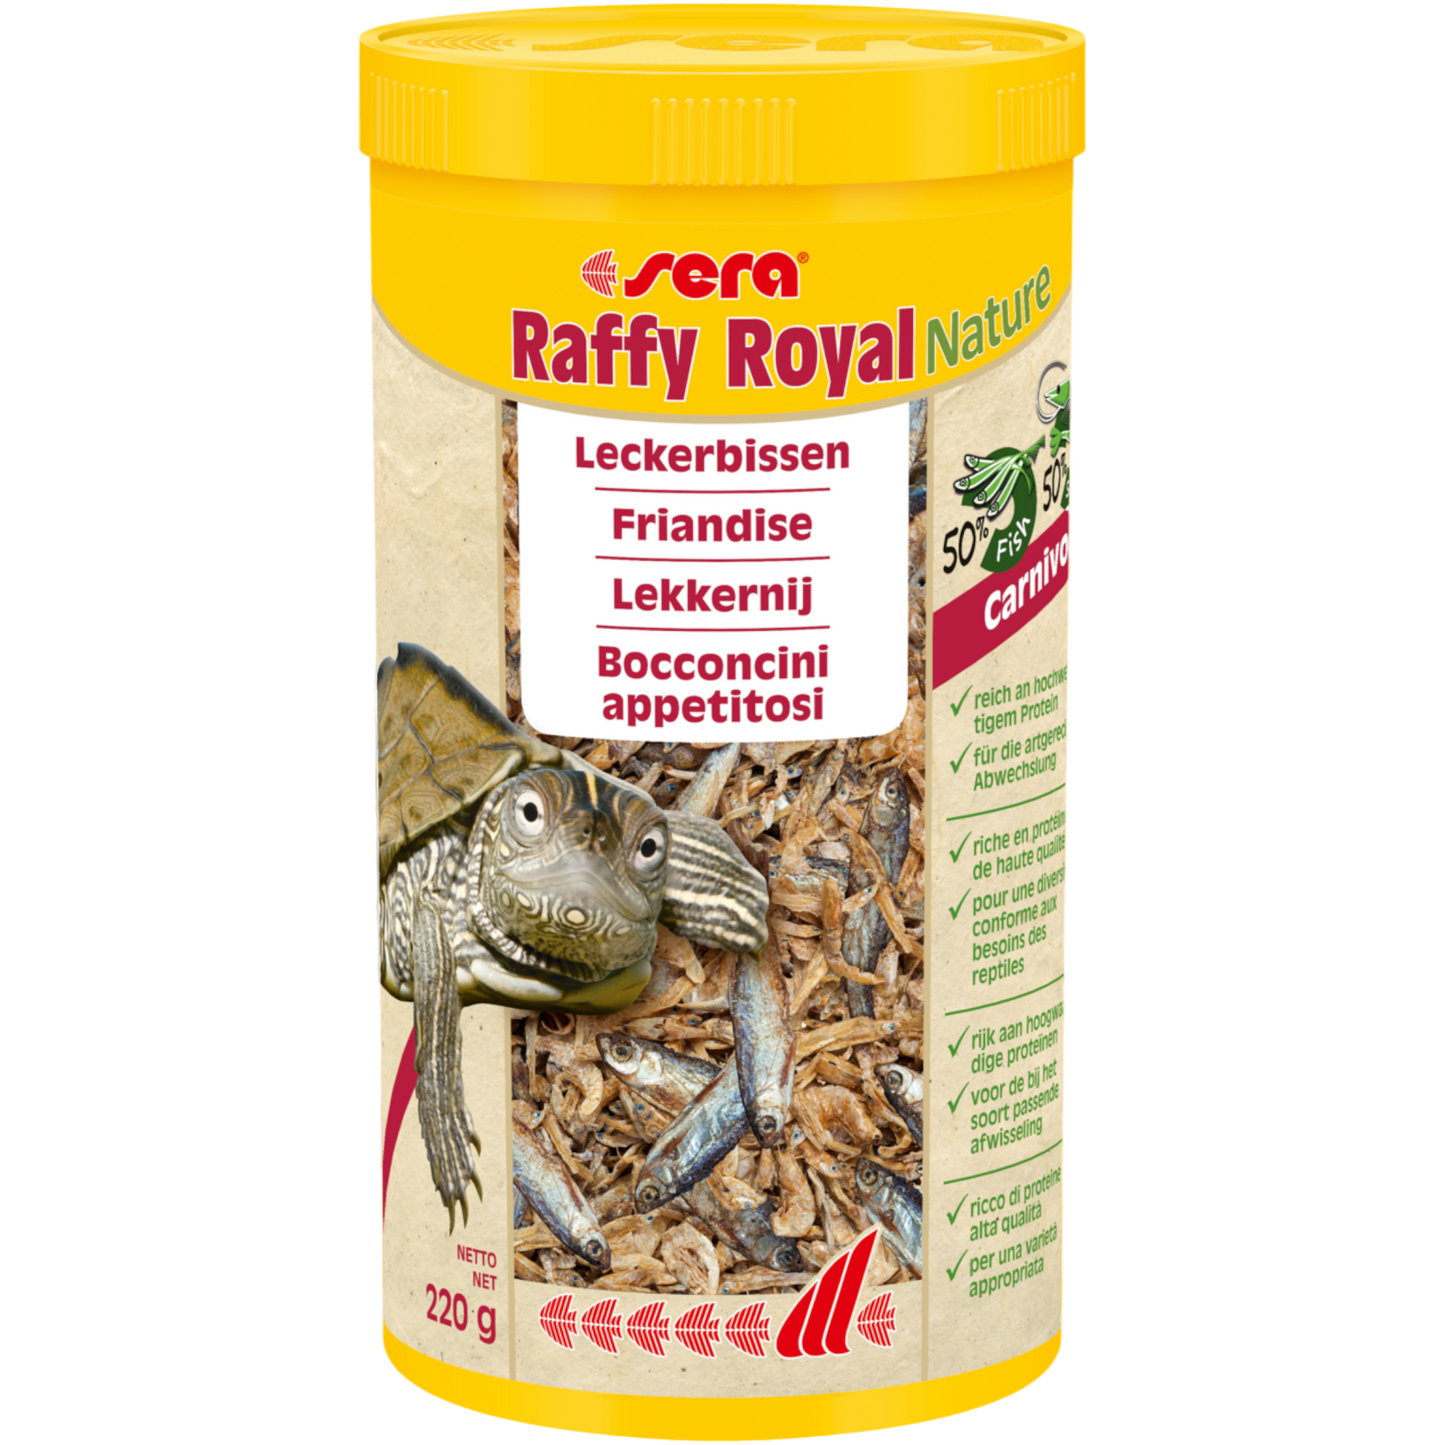 sera Raffy Royal Nature ist der Leckerbissen ohne Farb- und Konservierungsstoffe aus naturbelassenen, schonend getrockneten Fischen (50 %) und Garnelen (50 %). Es ist der besondere Snack für Wasserschildkröten sowie andere größere carnivore Reptilien, Amphibien und große räuberische Zierfische.